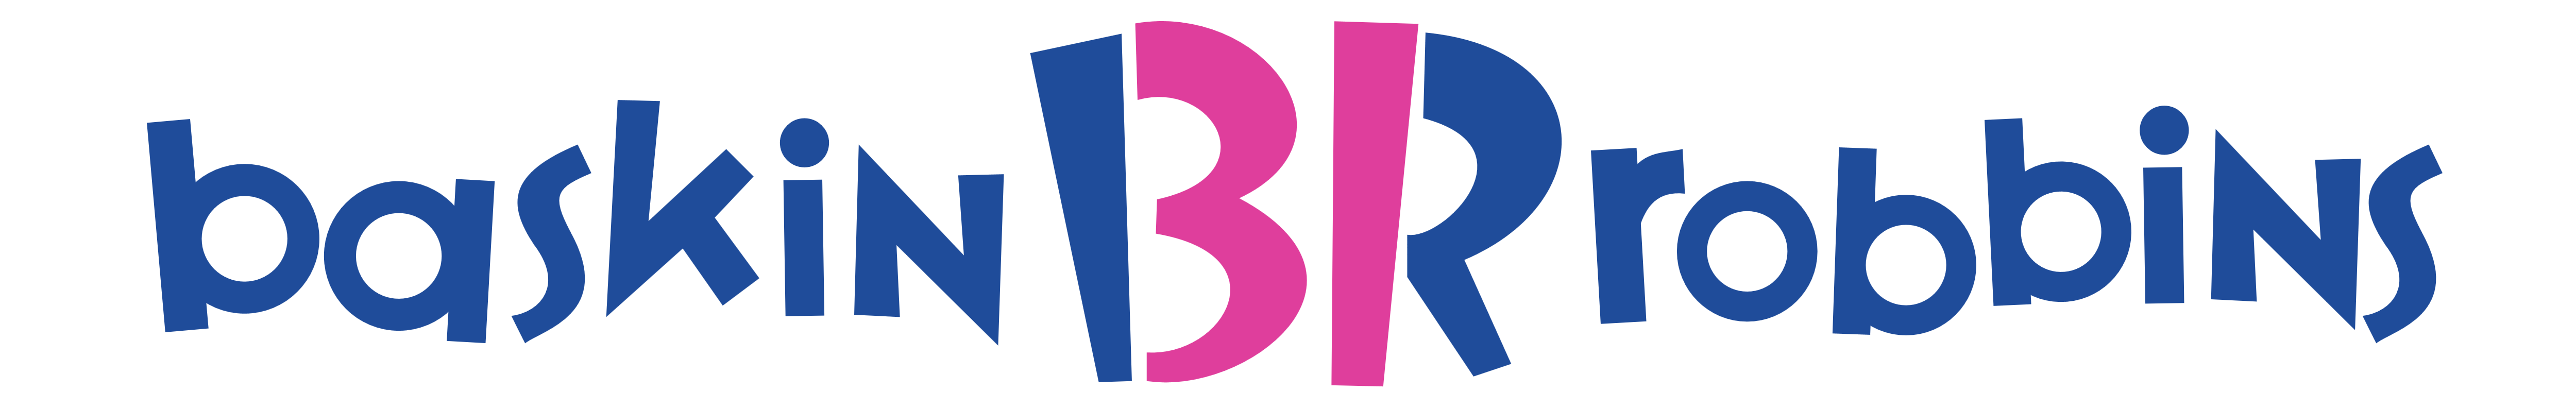 Baskin-Robbins – Logos Download